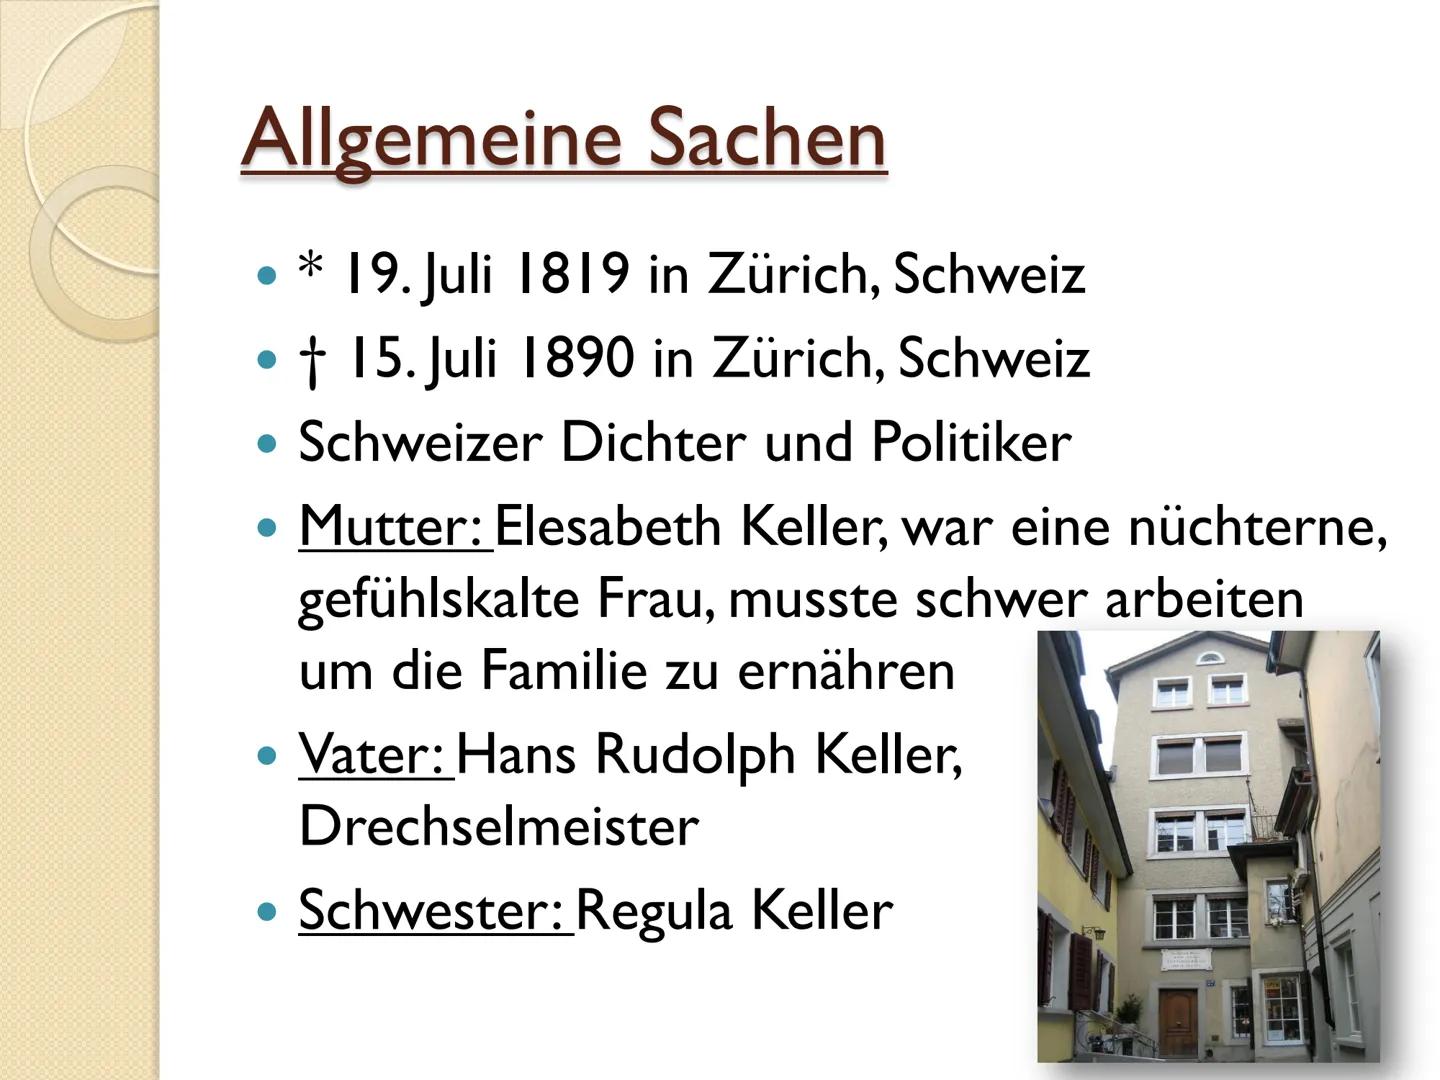 Gottfried Keller
alan
alan
story
alamy Gliederung
Allgemeine Sachen
Lebenslauf
Werke
Quellen Allgemeine Sachen
* 19. Juli 1819 in Zürich, Sc